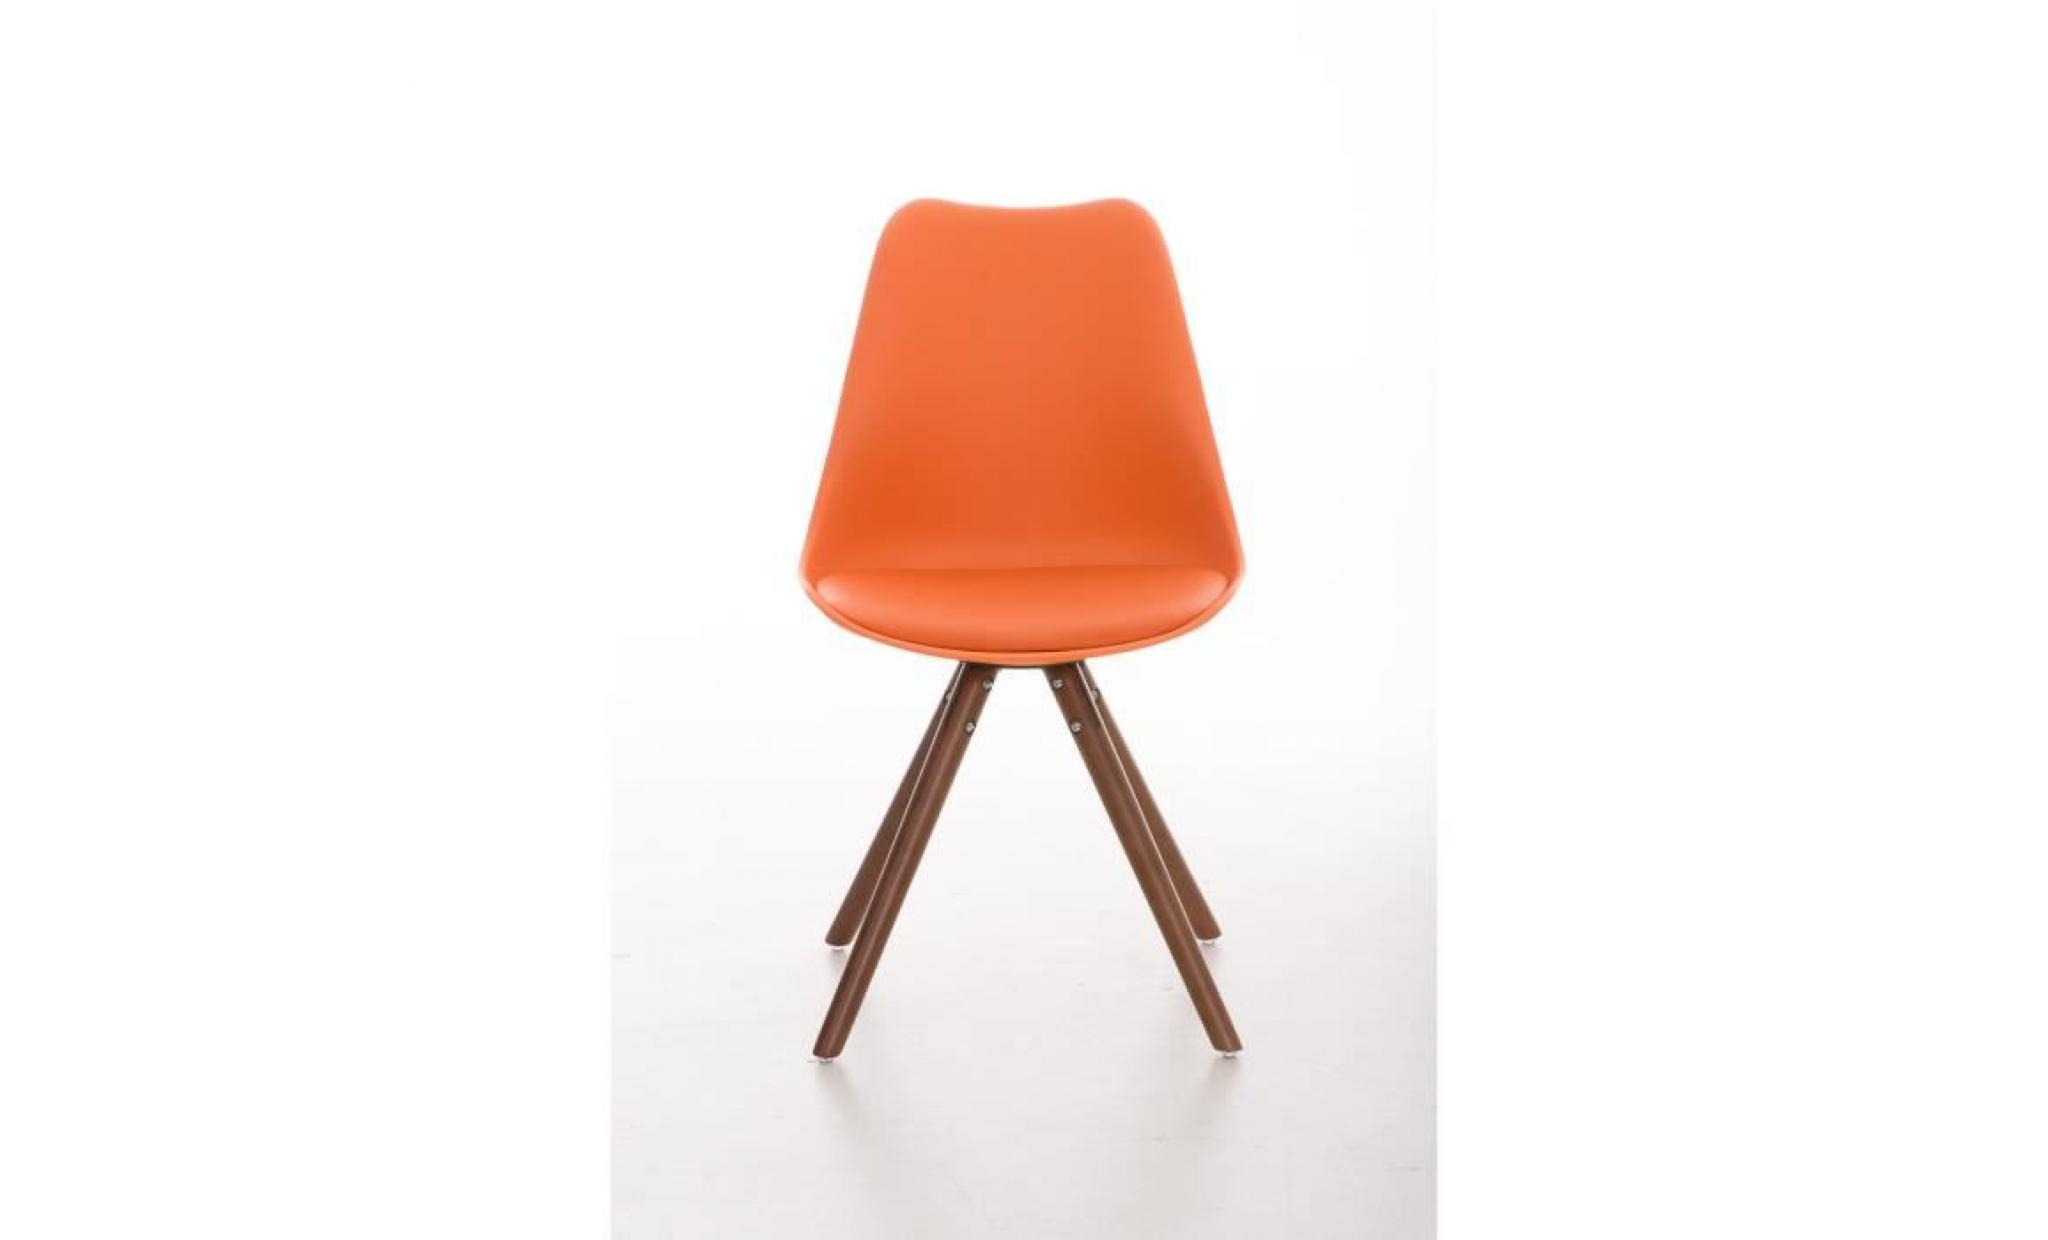 clp chaise de visiteurs de design rétro pegleg avec piétement en bois noix, mélange de matériaux en plastique, cuir synthétique e... pas cher